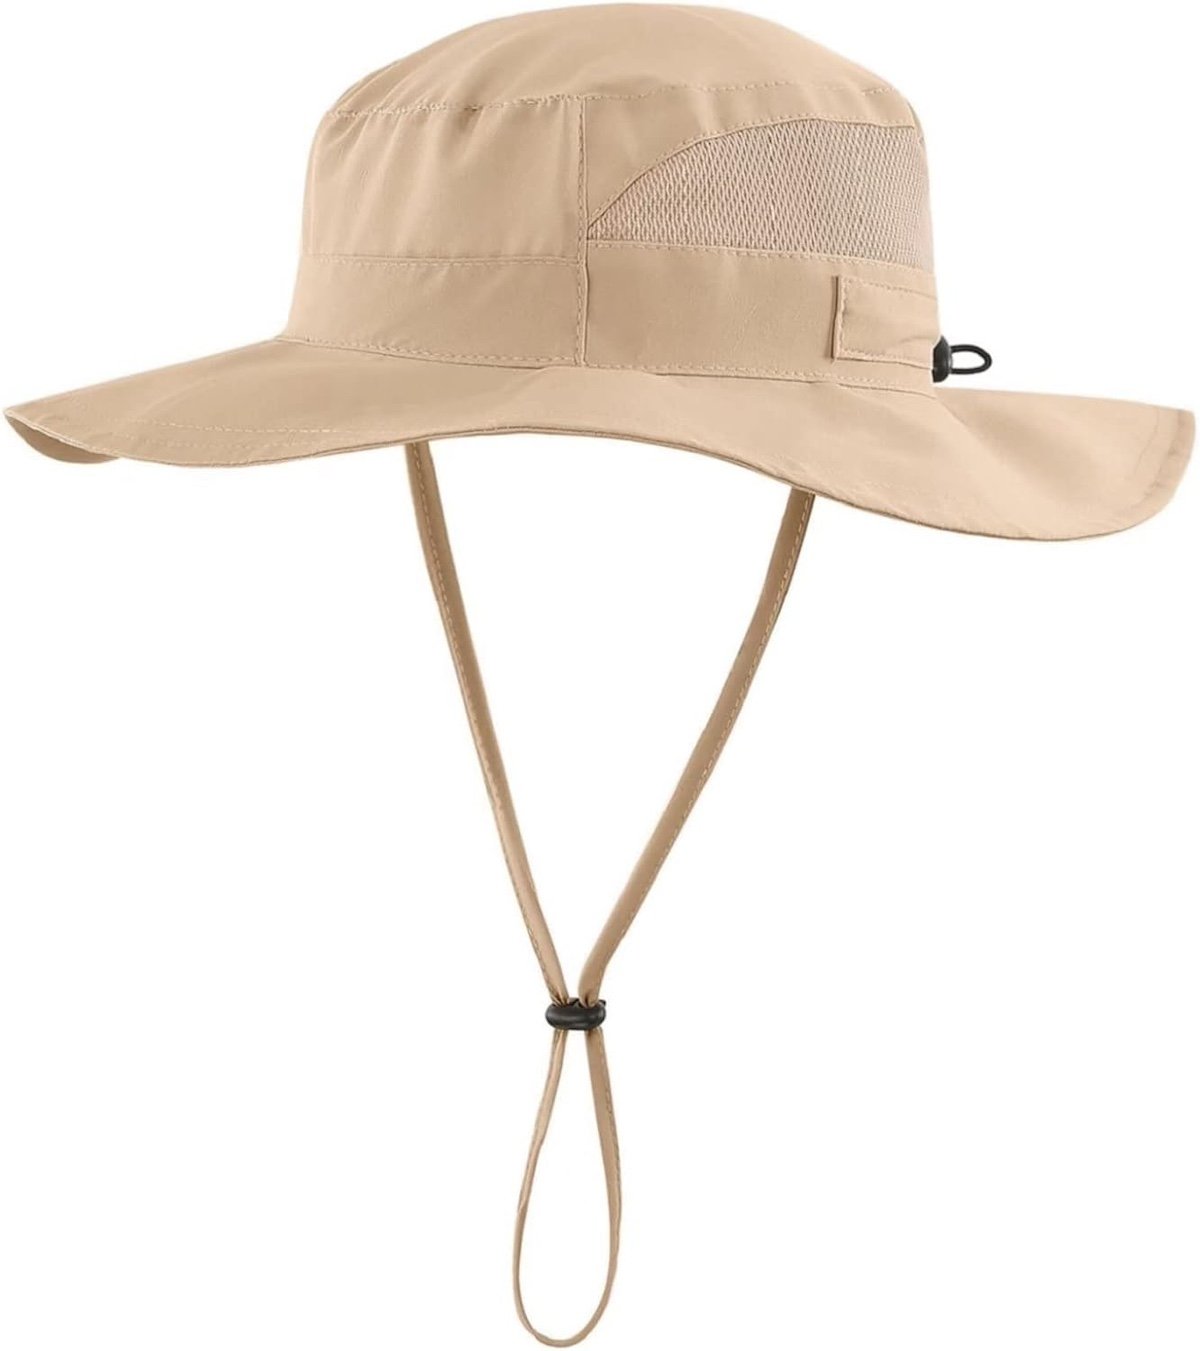 sun hat best hiking gear for kids